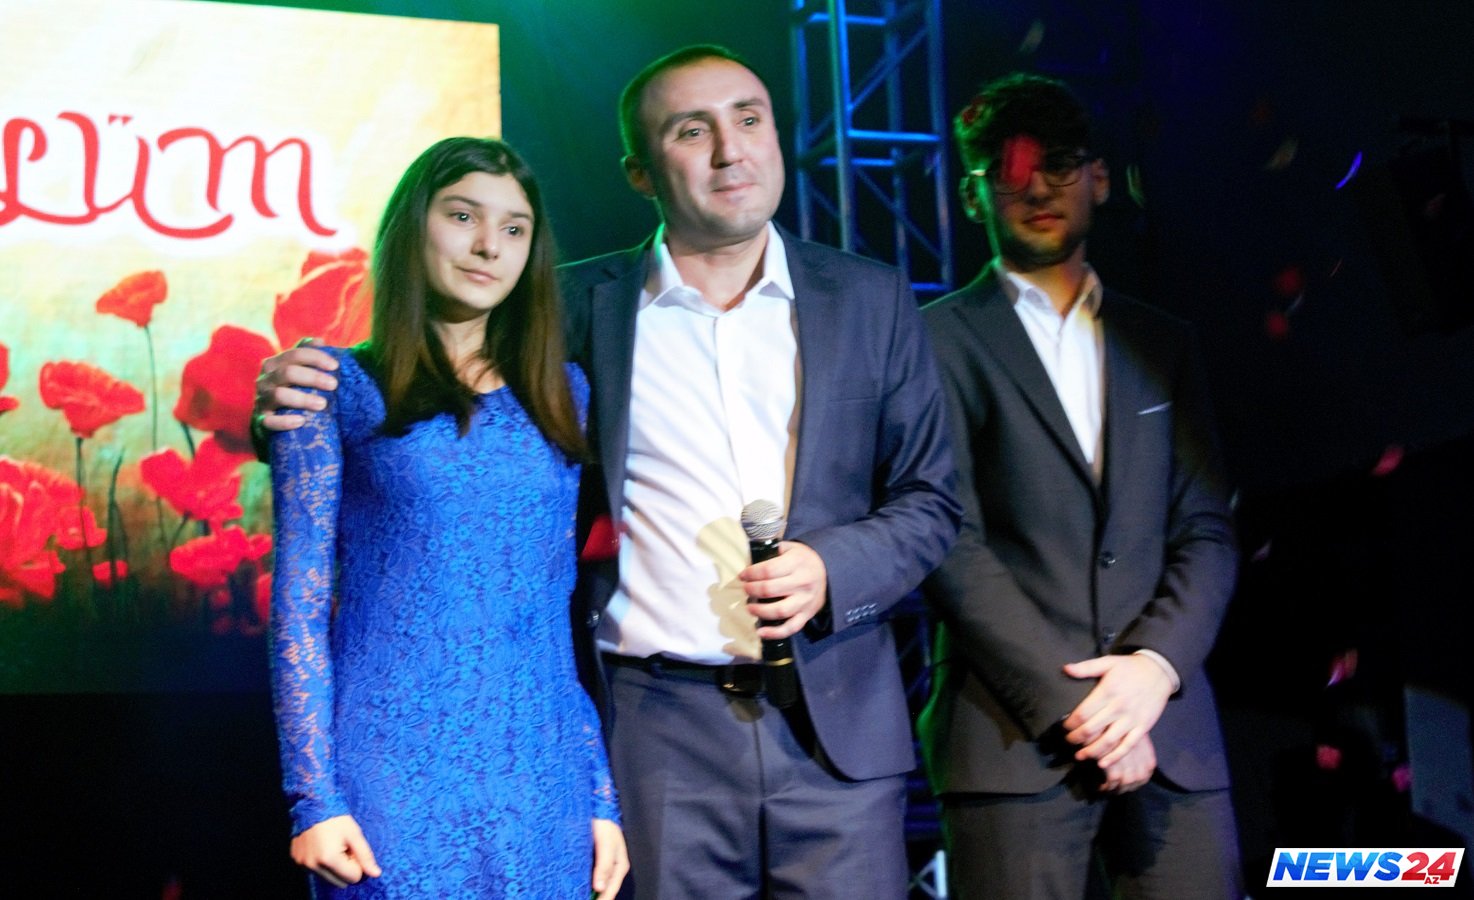 Nail Naiboğlunun "Gülüm" yubiley konserti MTV-də - ANONS VİDEO 